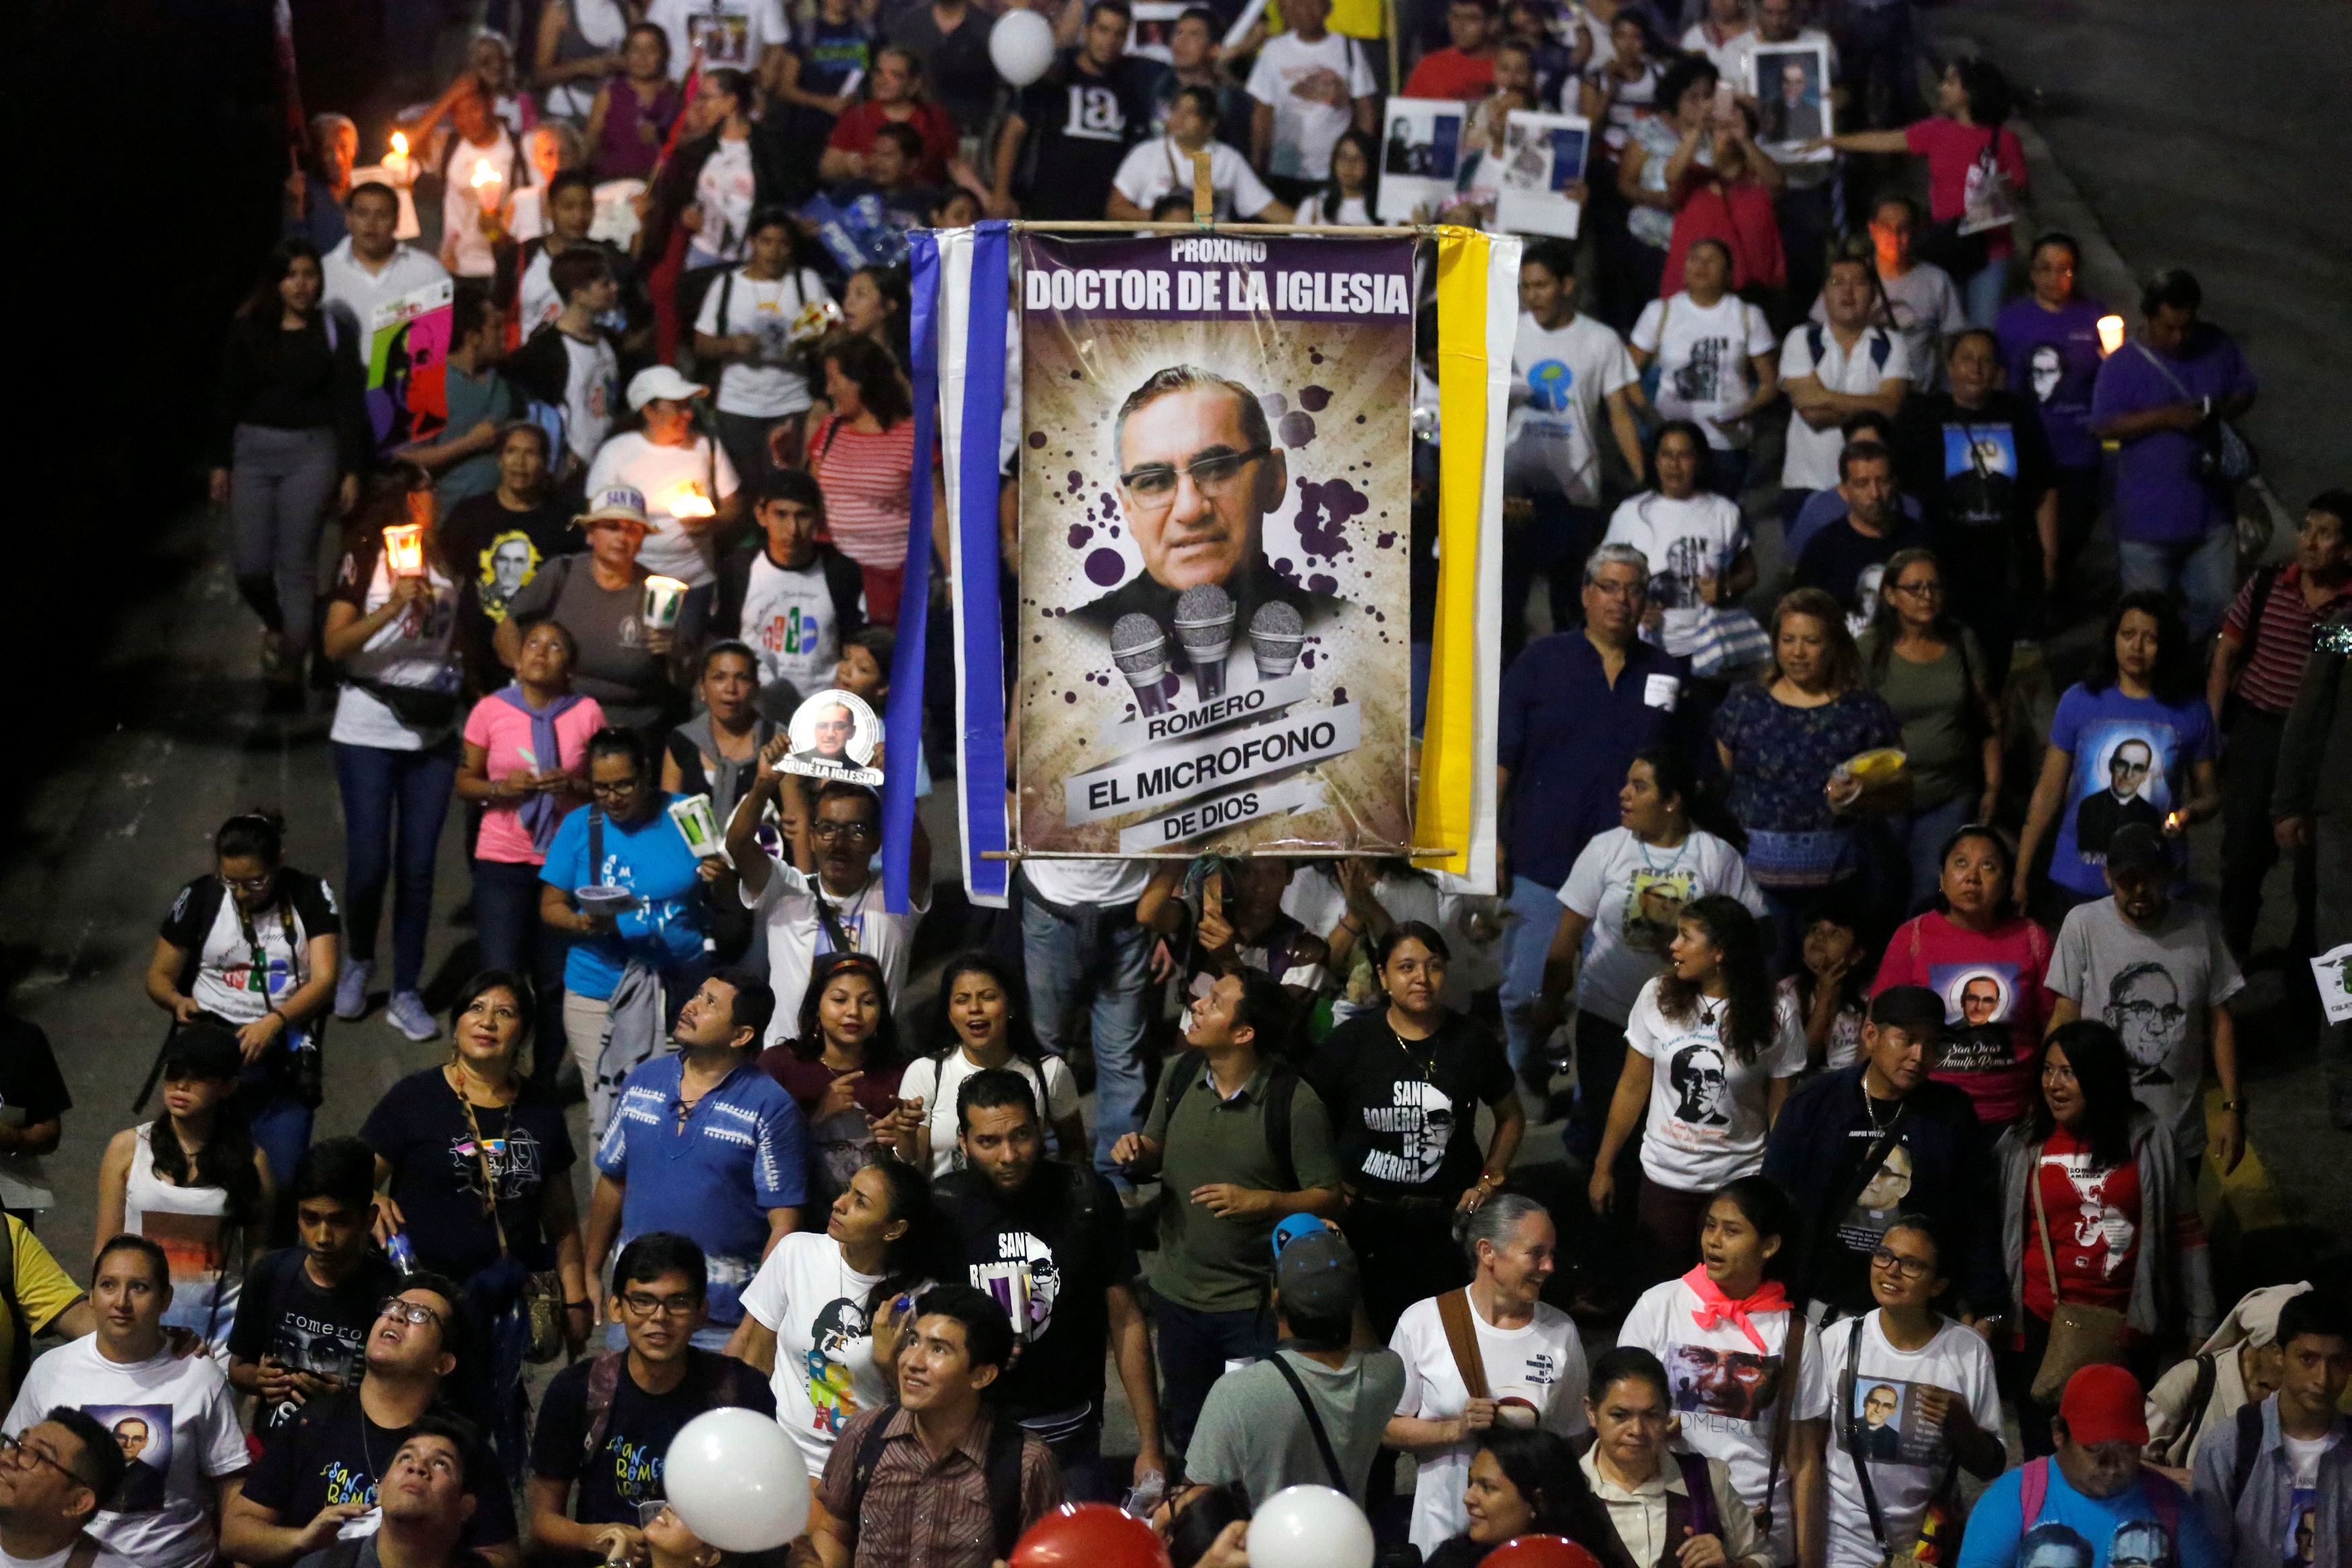 El Salvador celebrates its first saint, whose legacy continues